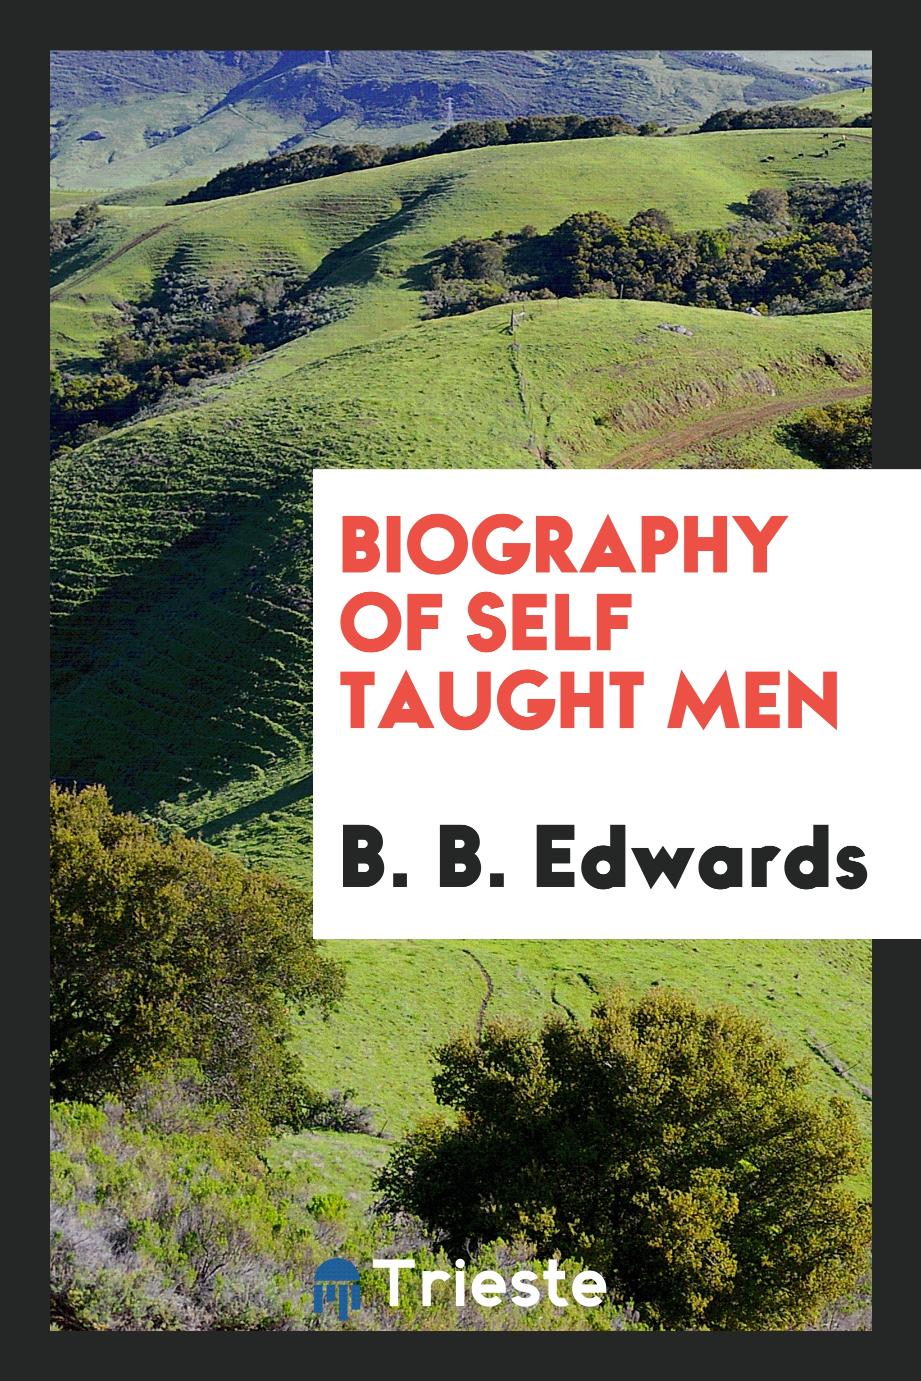 Biography of self taught men